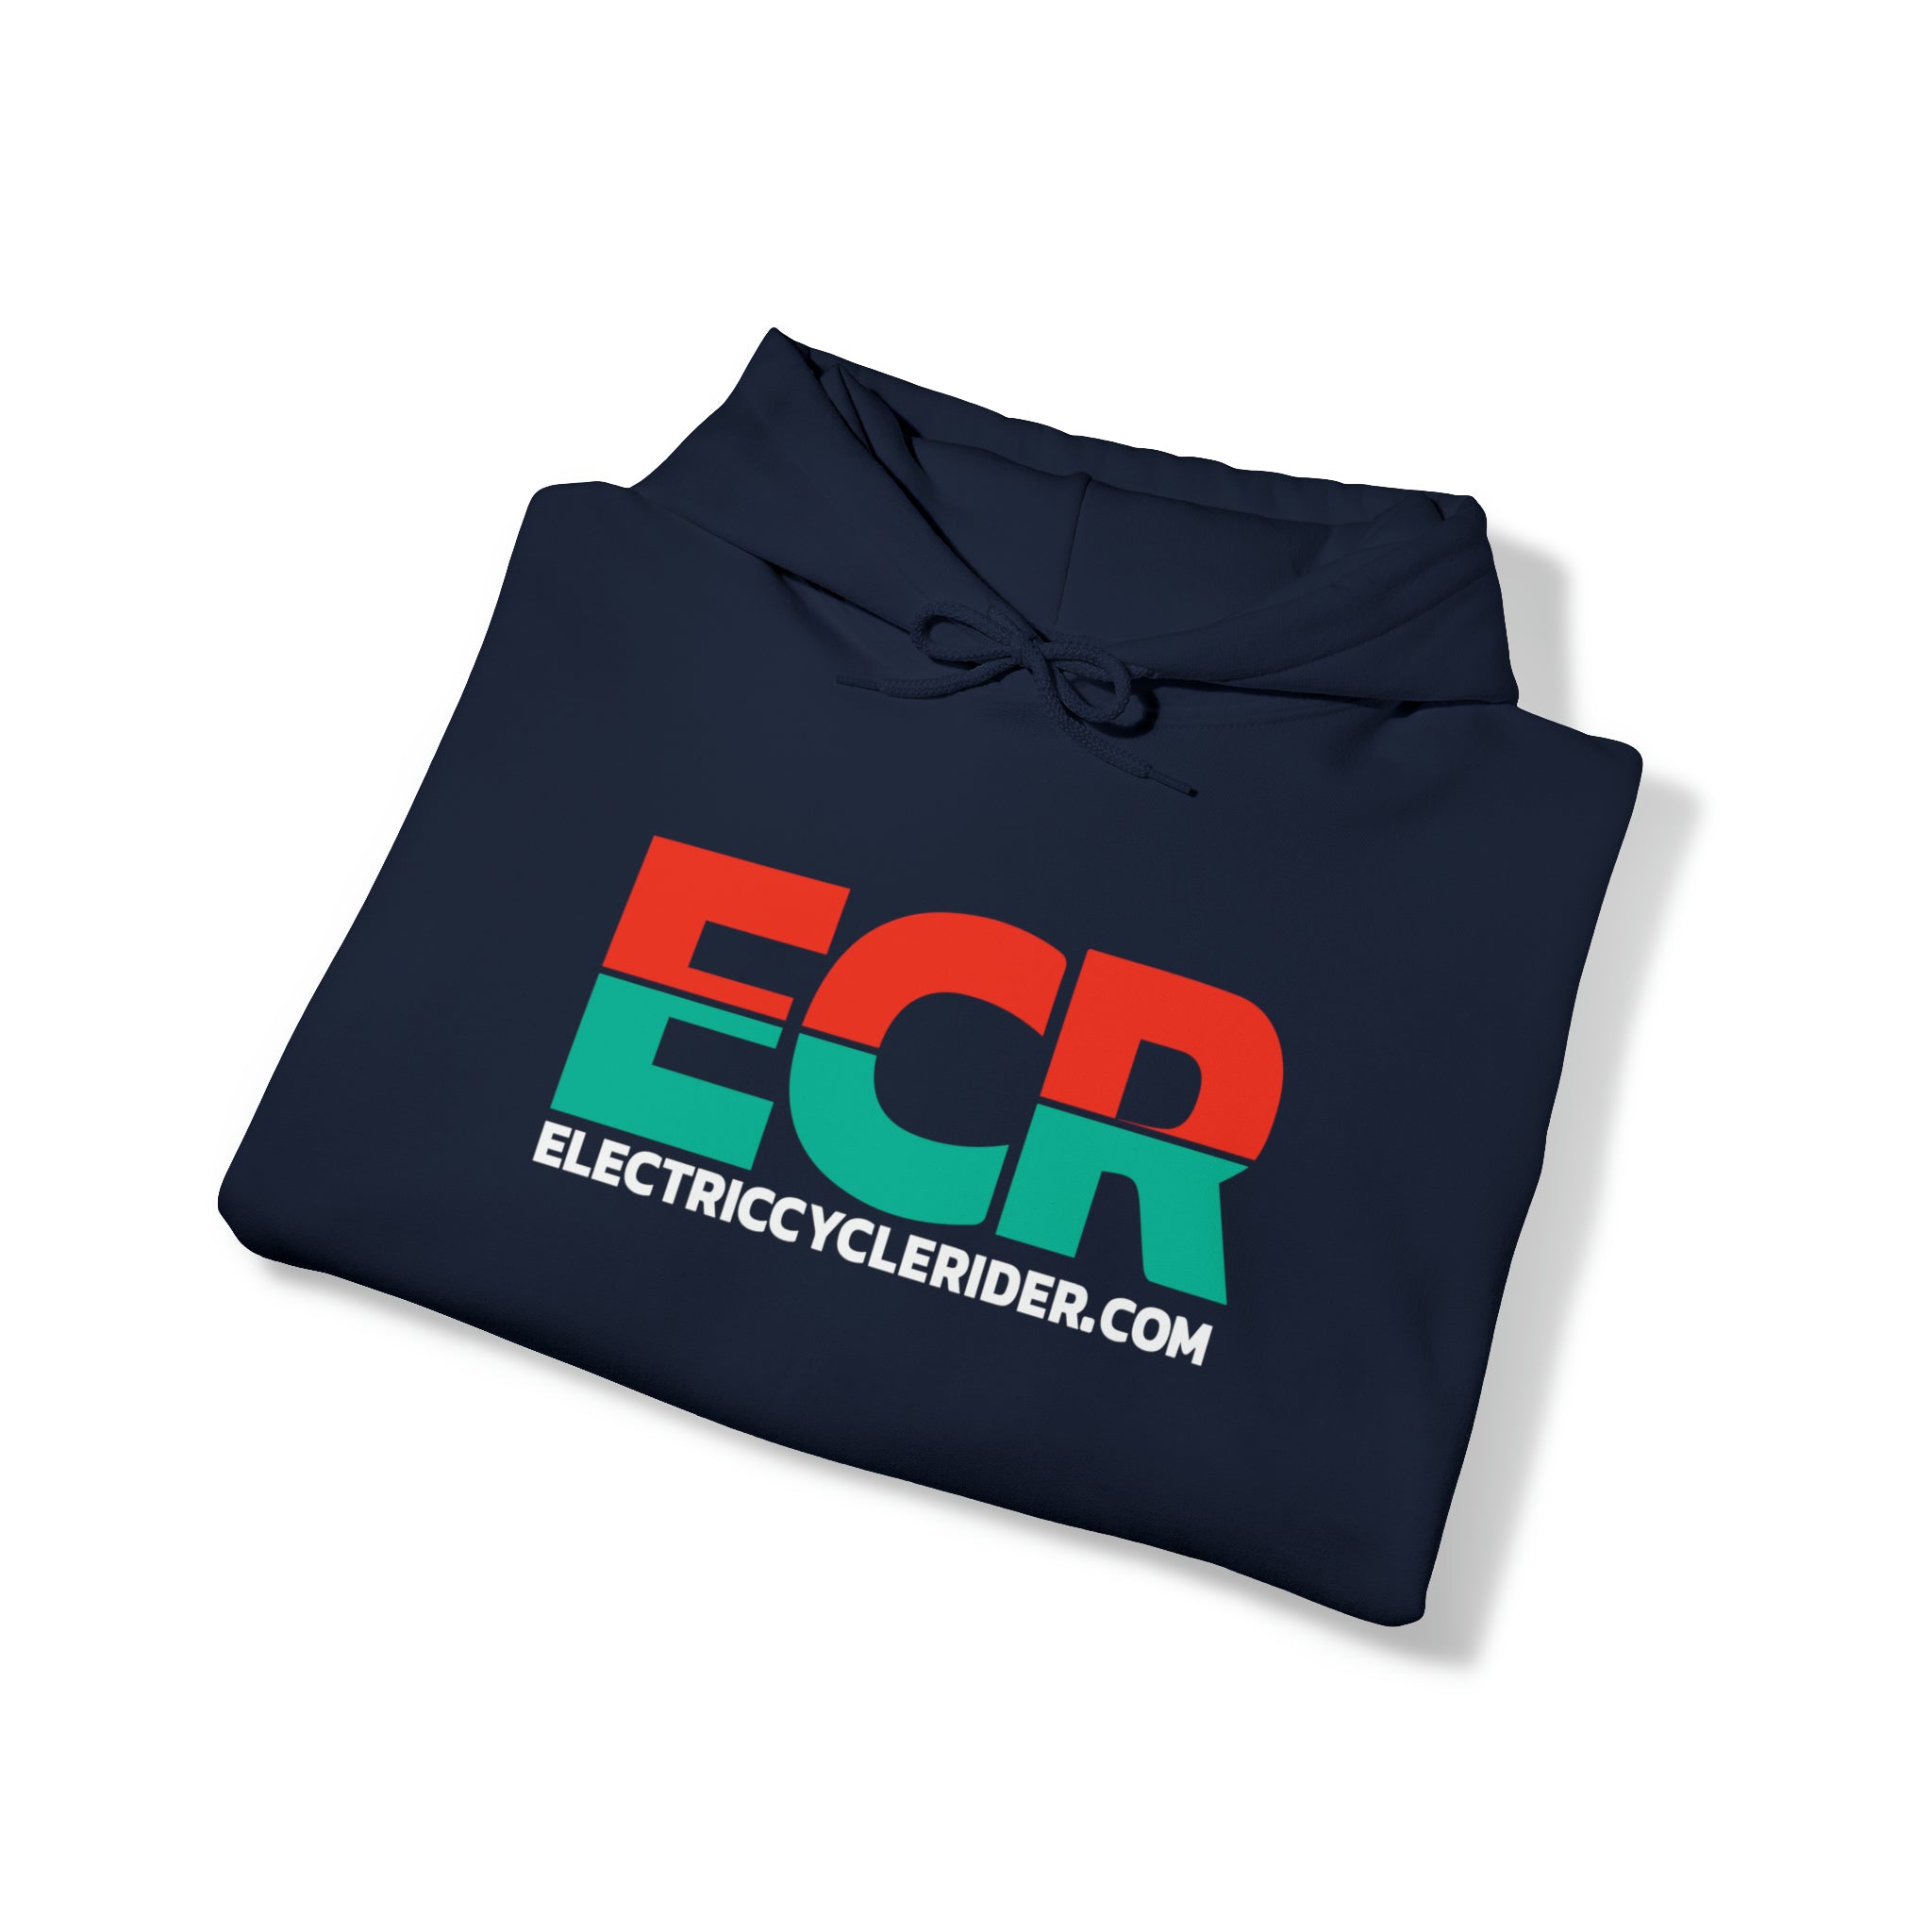 ECR Sweatshirt